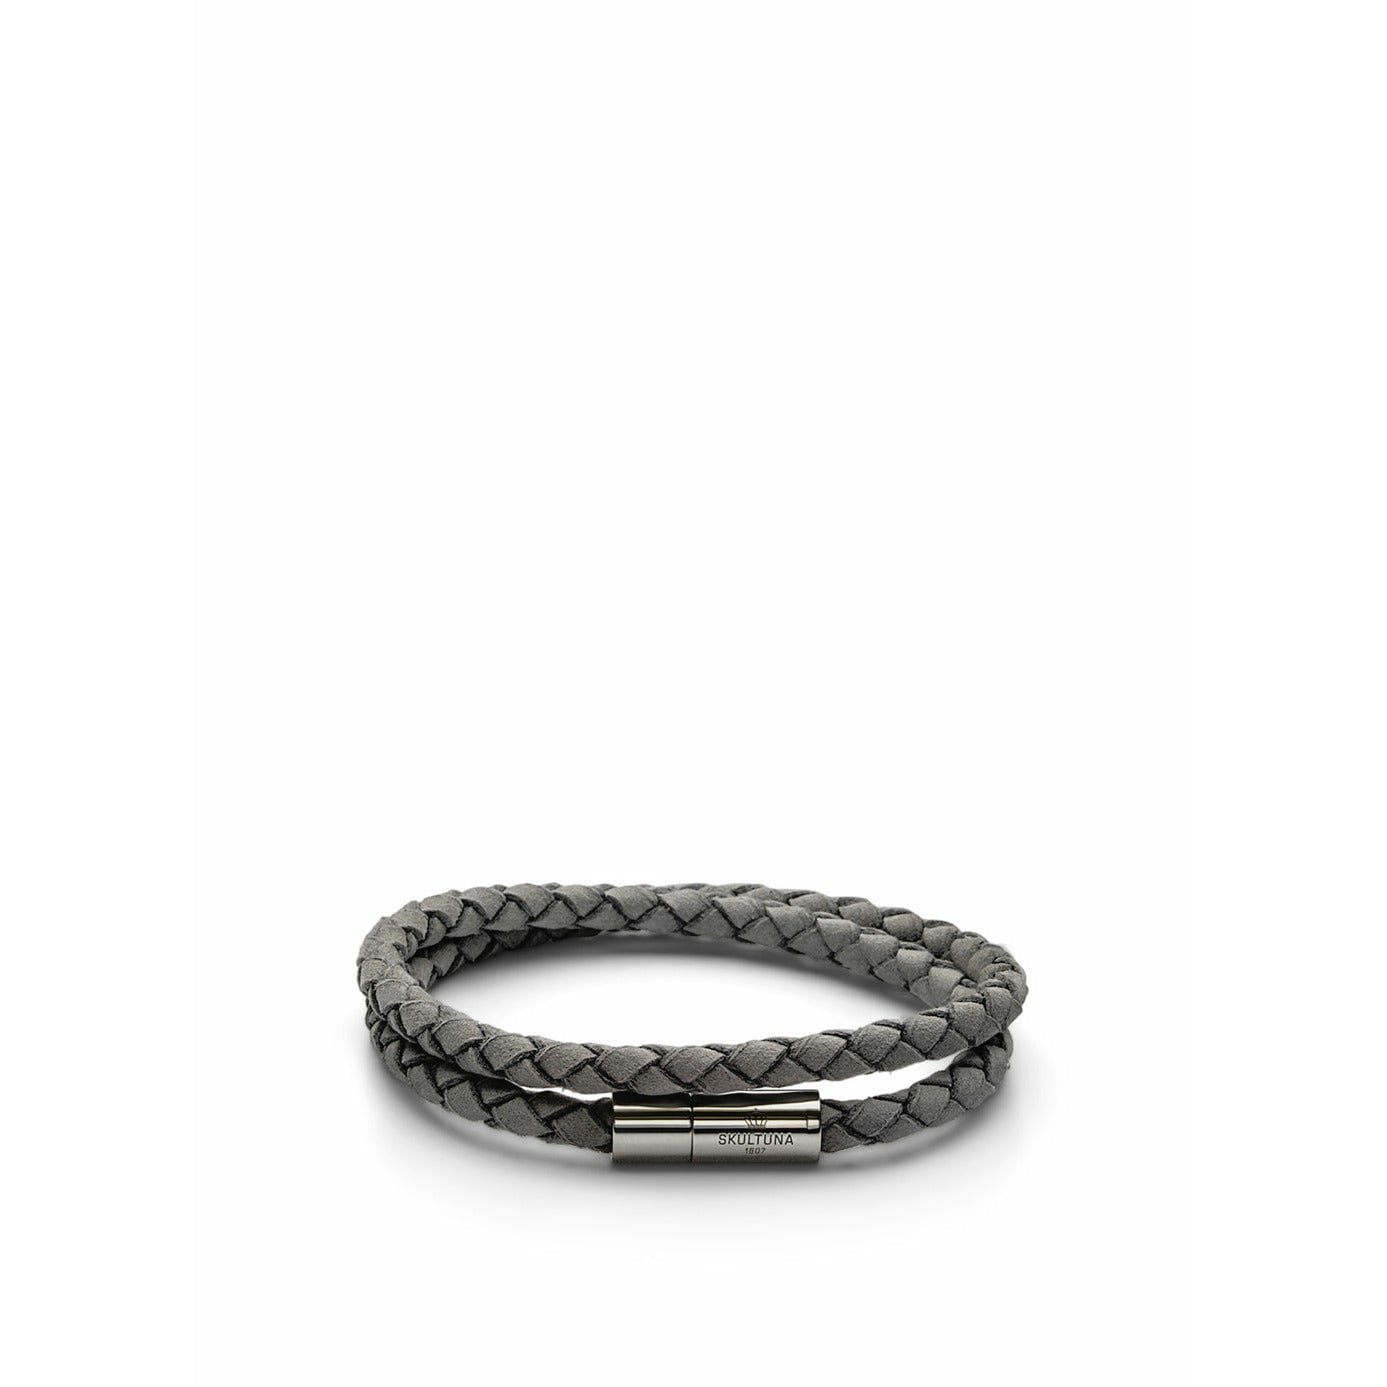 Skultuna De suede armband klein Ø14,5 cm, grijs